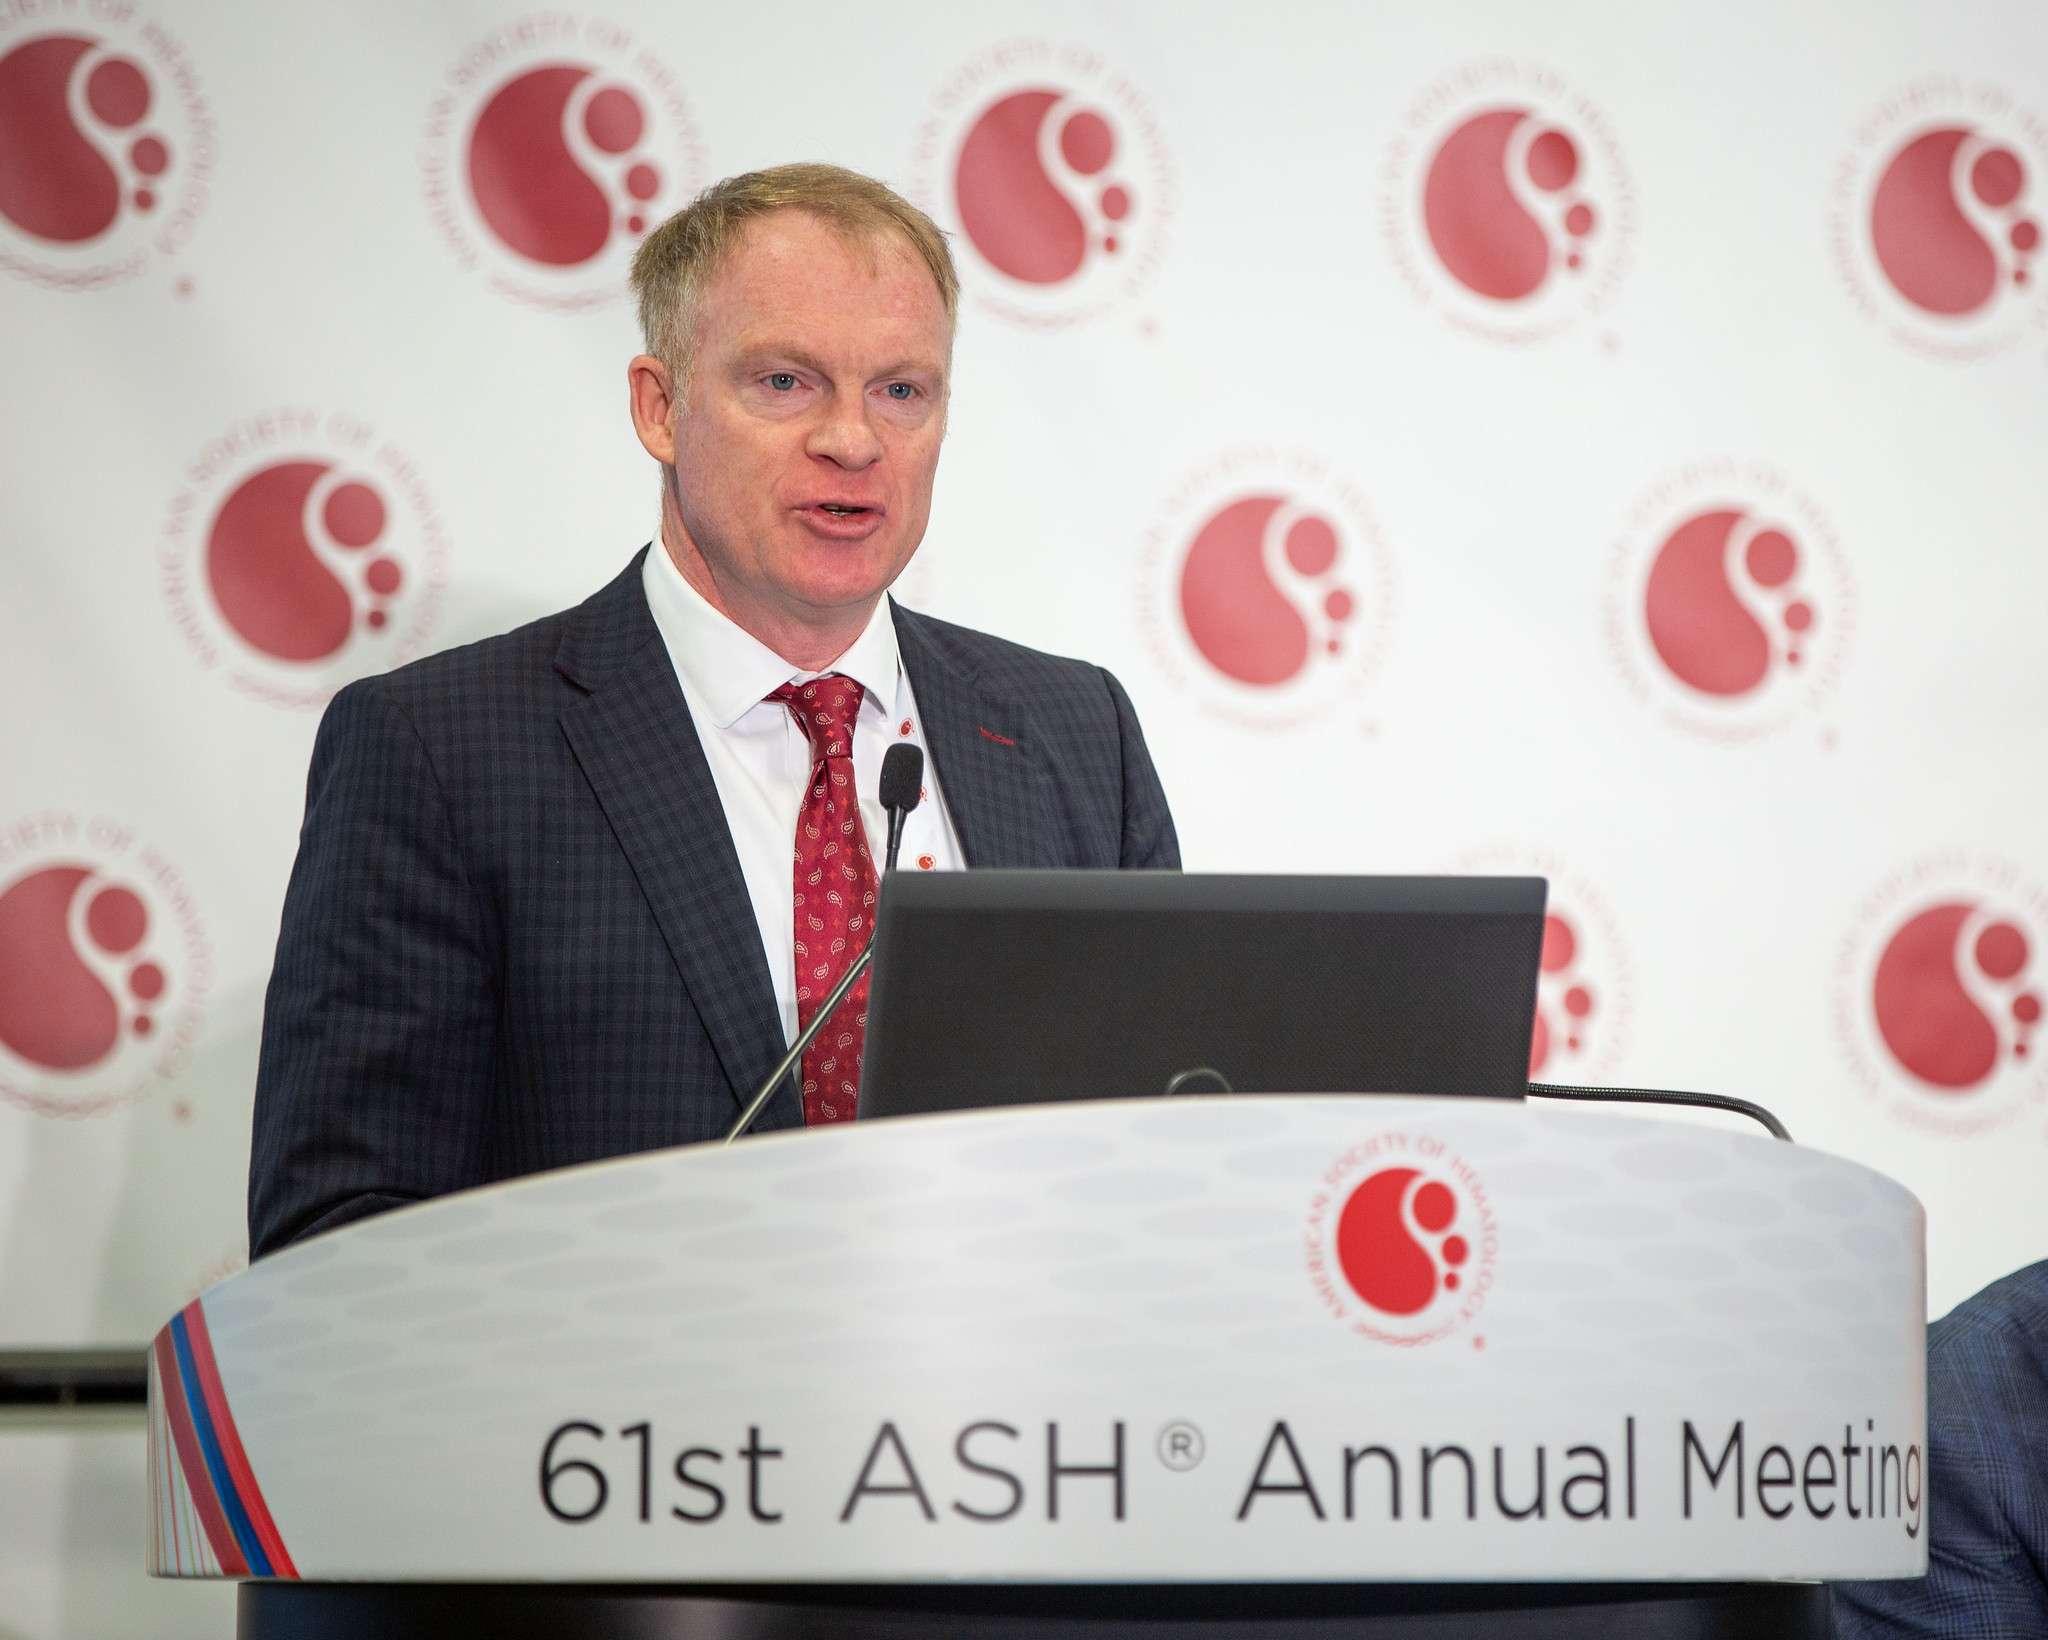 ASH 2019: Blinatumomab, die effektive Brücke zur Transplantation